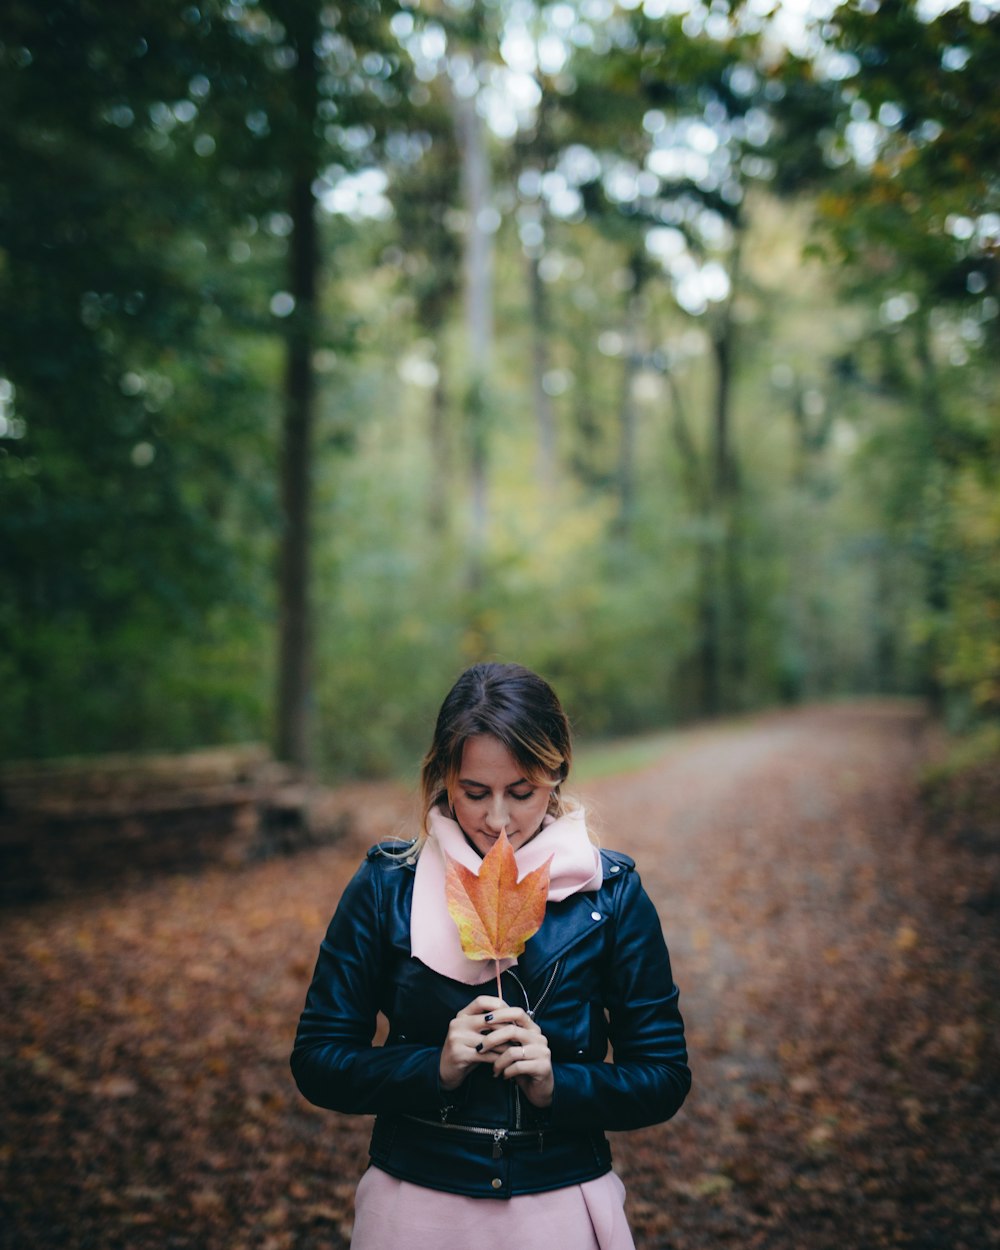 昼間、高い木の近くでカエデの葉を手にする女性